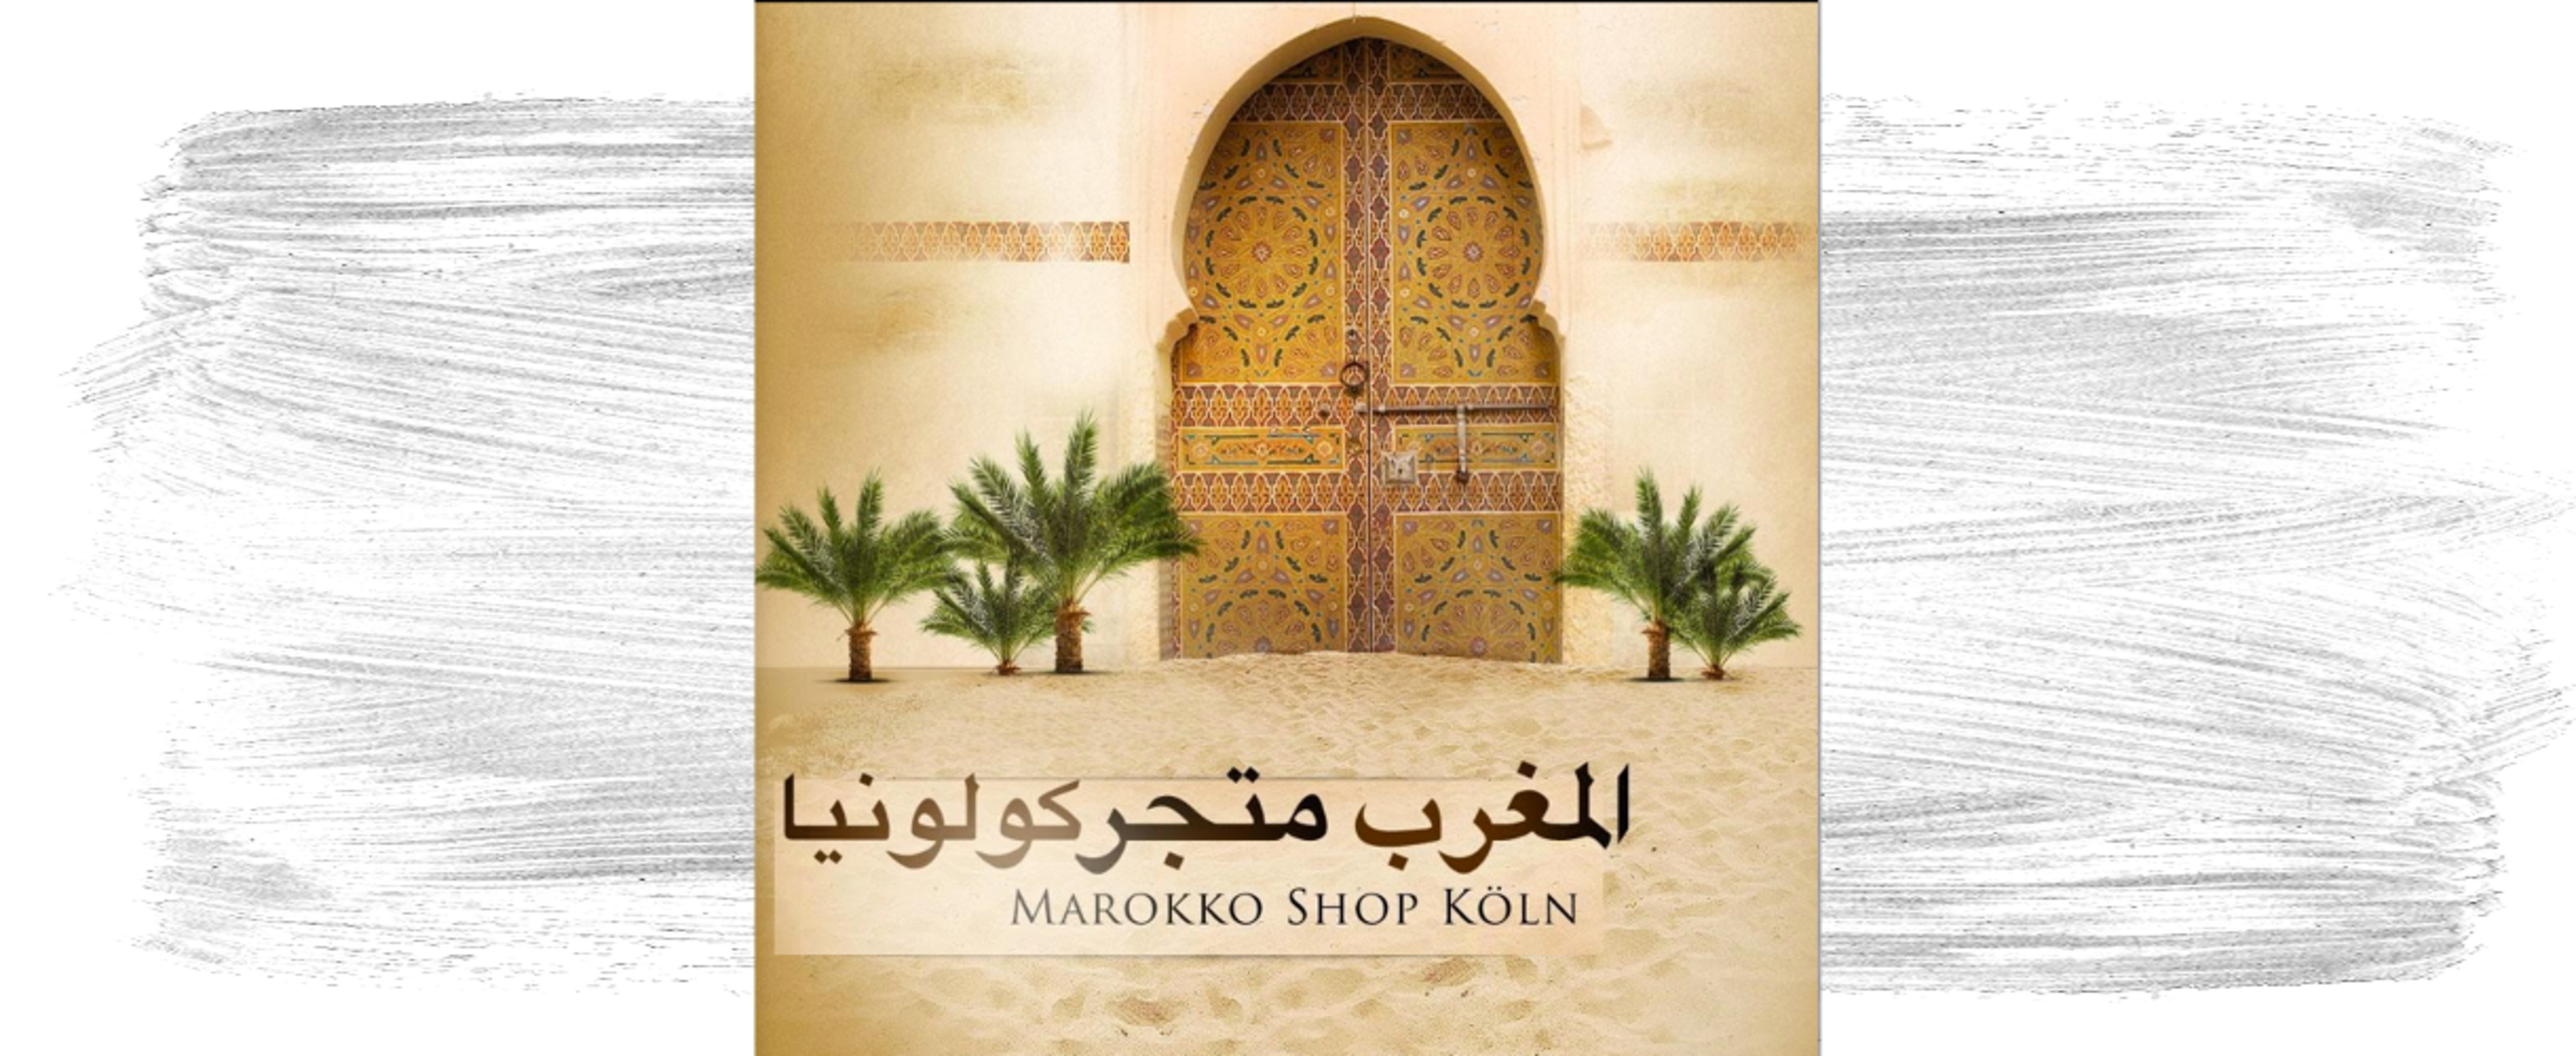 Bild vom Shoplogo Marokko Shop 